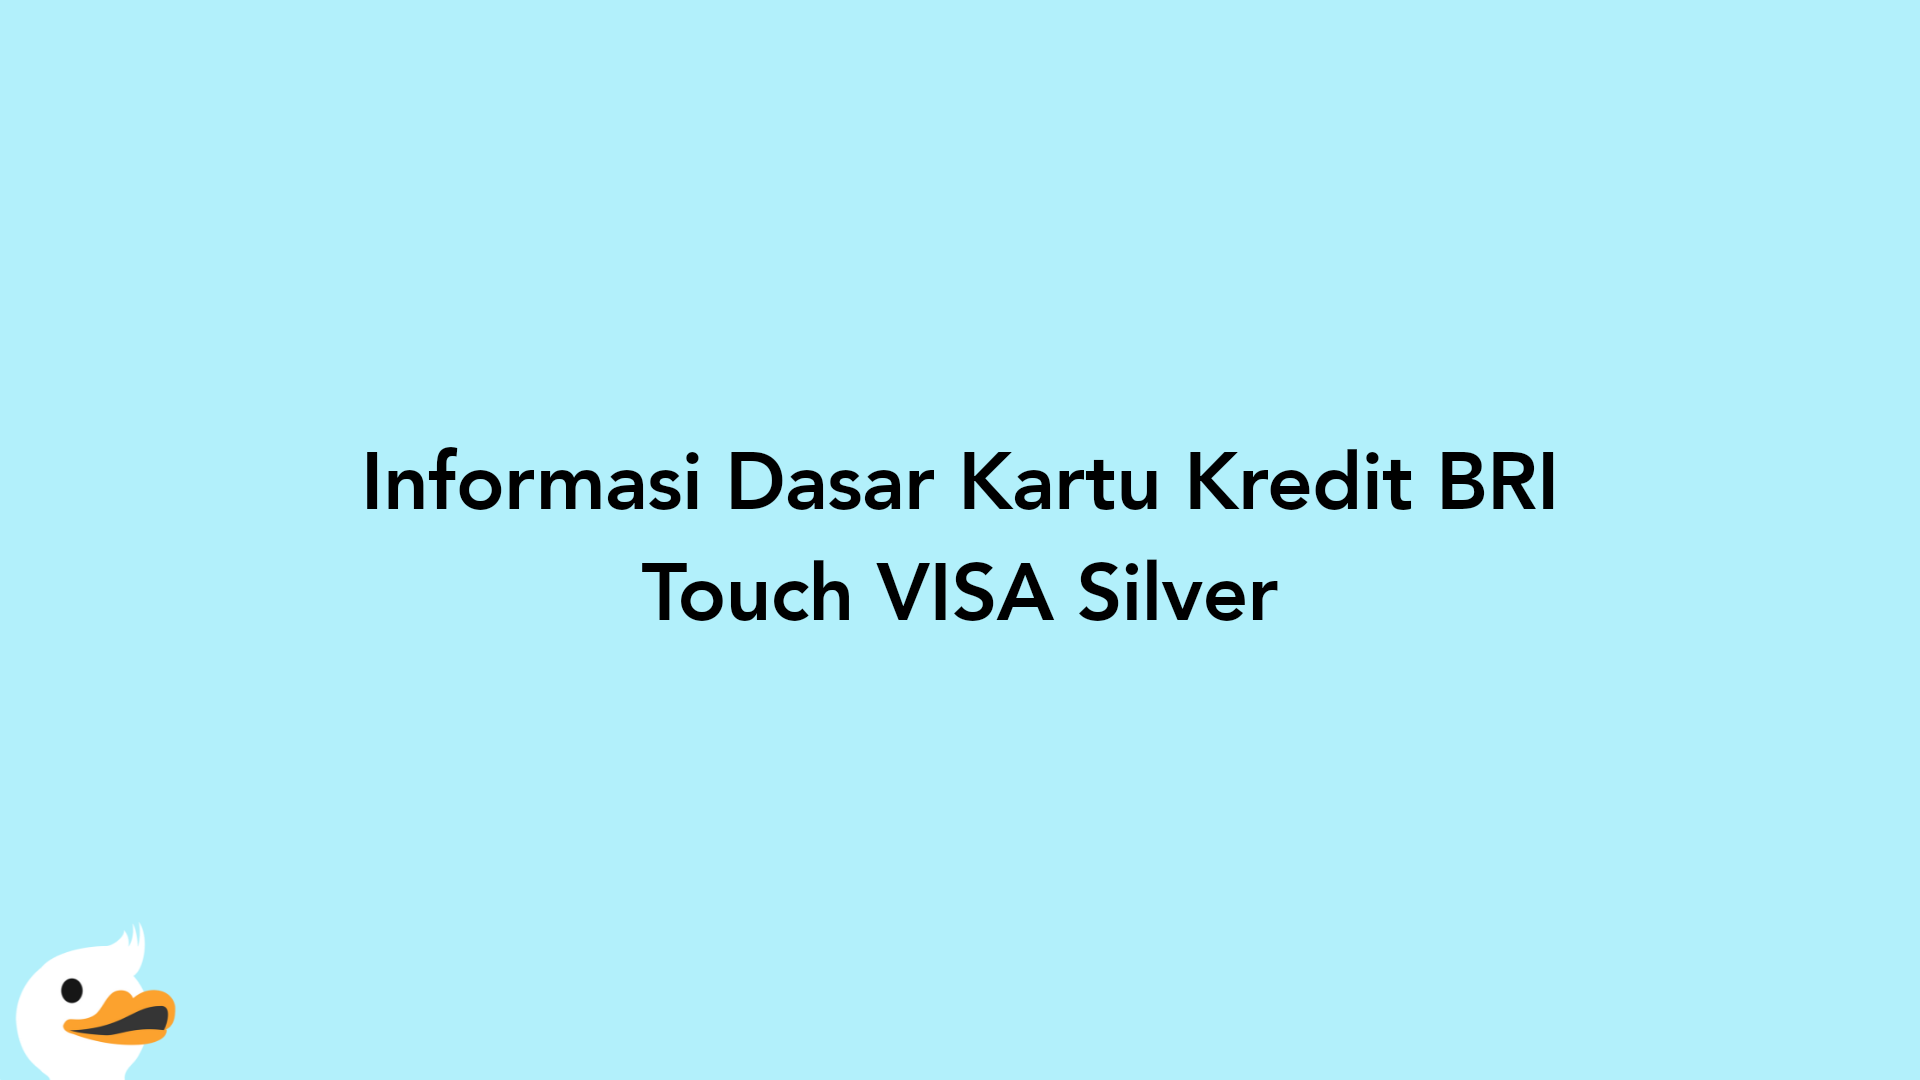 Informasi Dasar Kartu Kredit BRI Touch VISA Silver